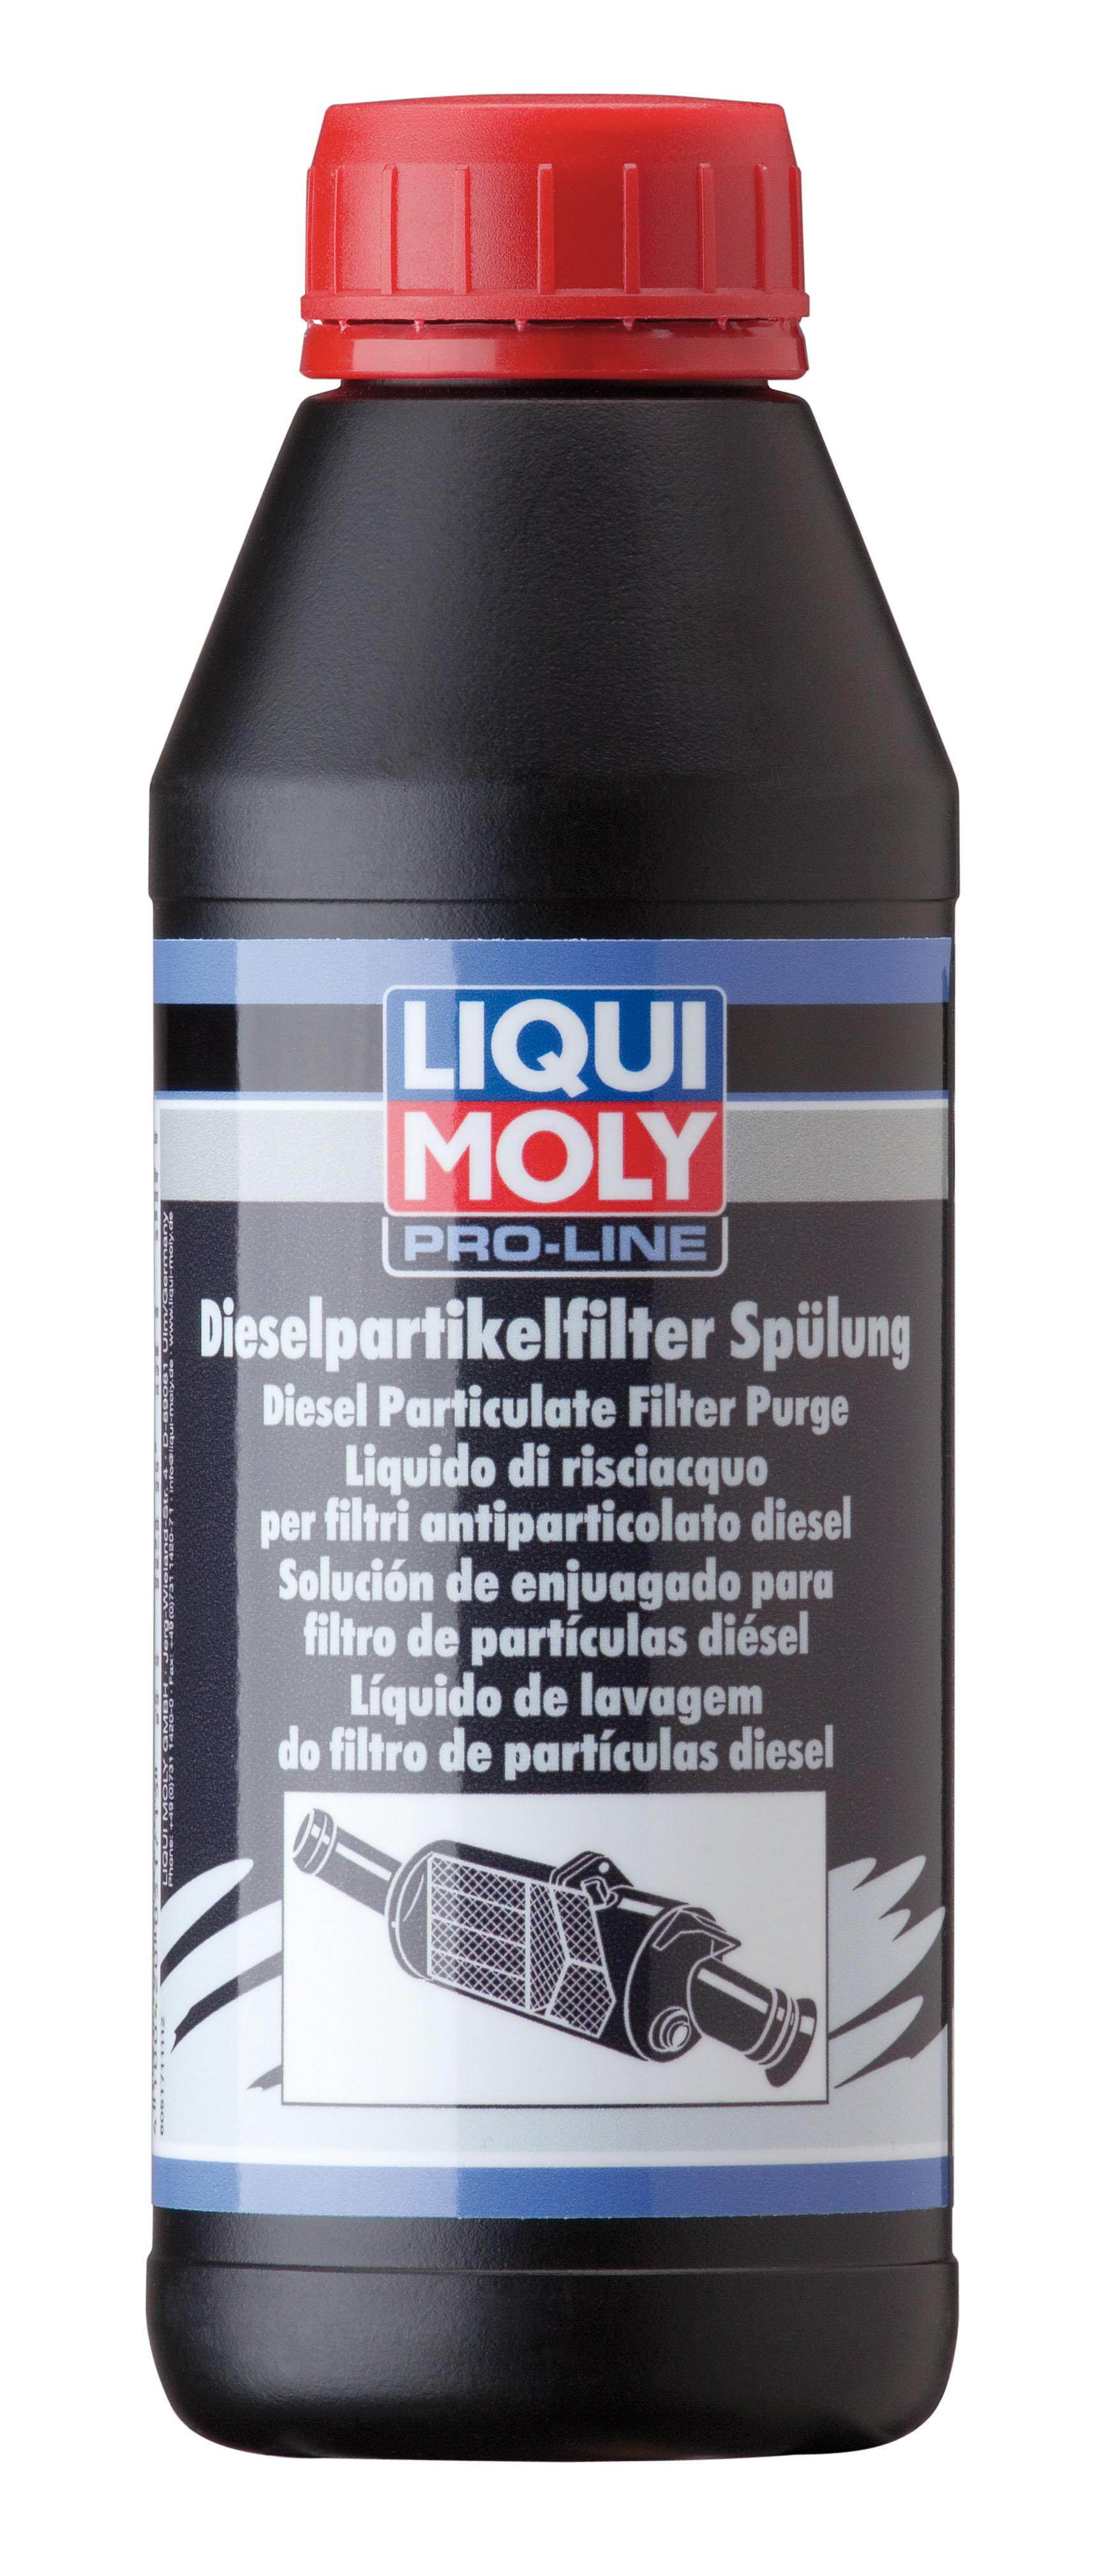 Промывка дизельного сажевого фильтра профессиональная финишняя Pro-Line Diesel Partikelfilter Spulung, 500мл - Liqui Moly 5171